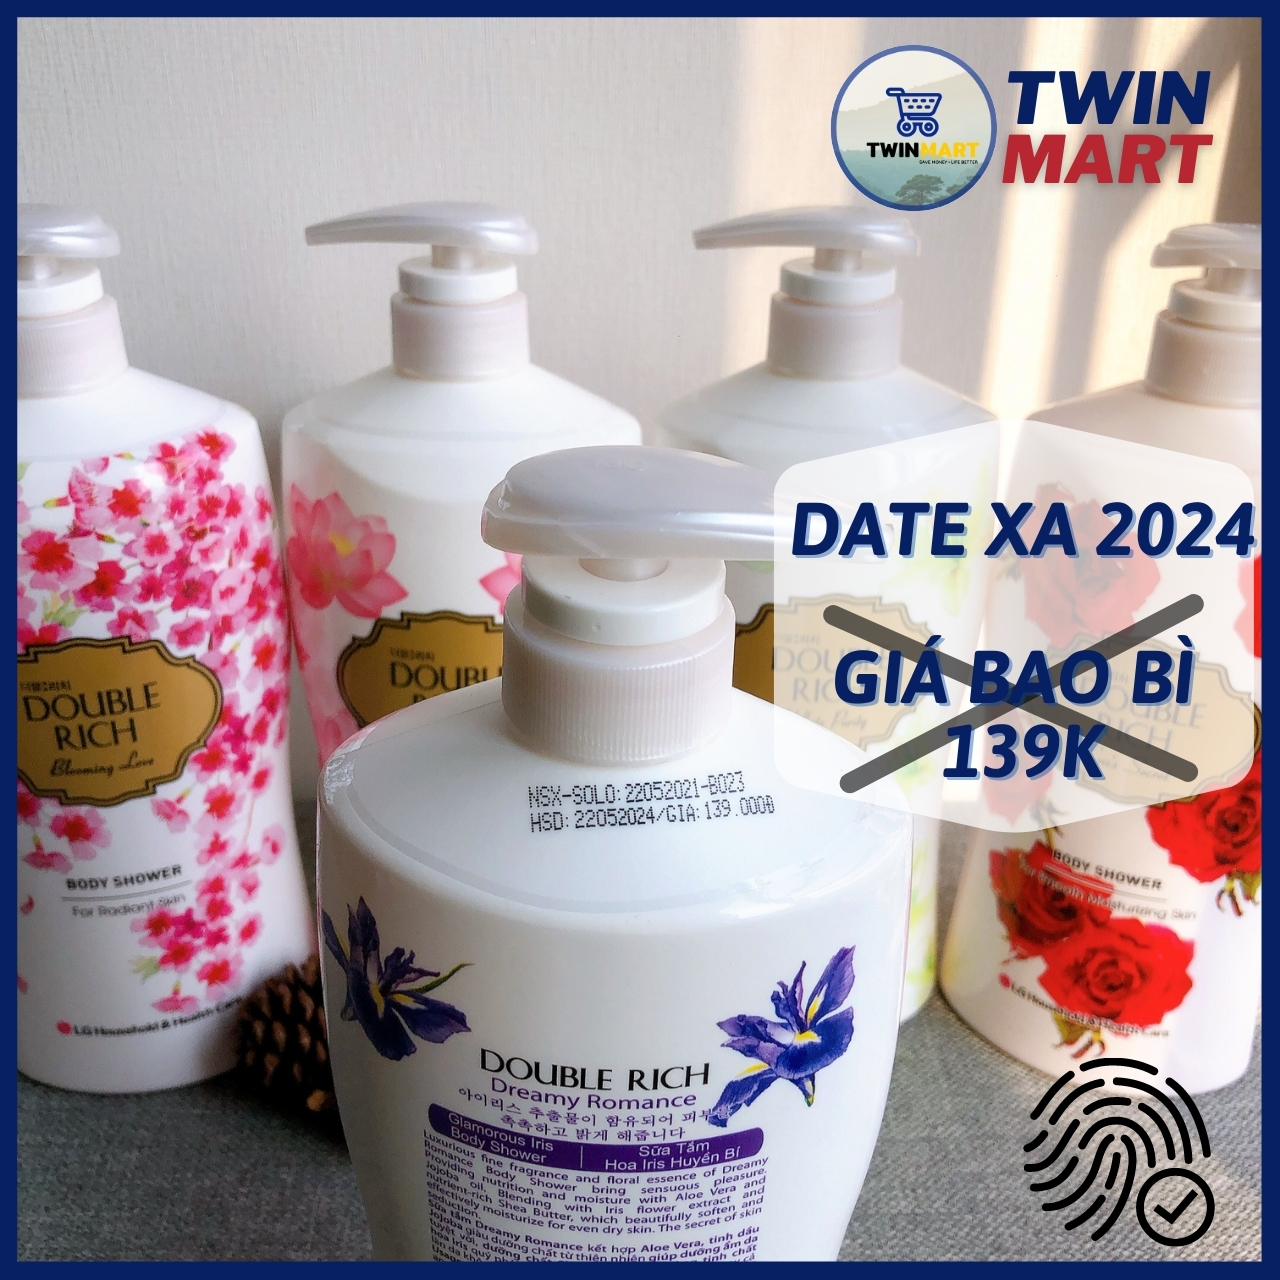 DATE XA Sữa Tắm Double Rich hương nước hoa tự nhiên Hàn Quốc - 800g - Hương Hoa Lily